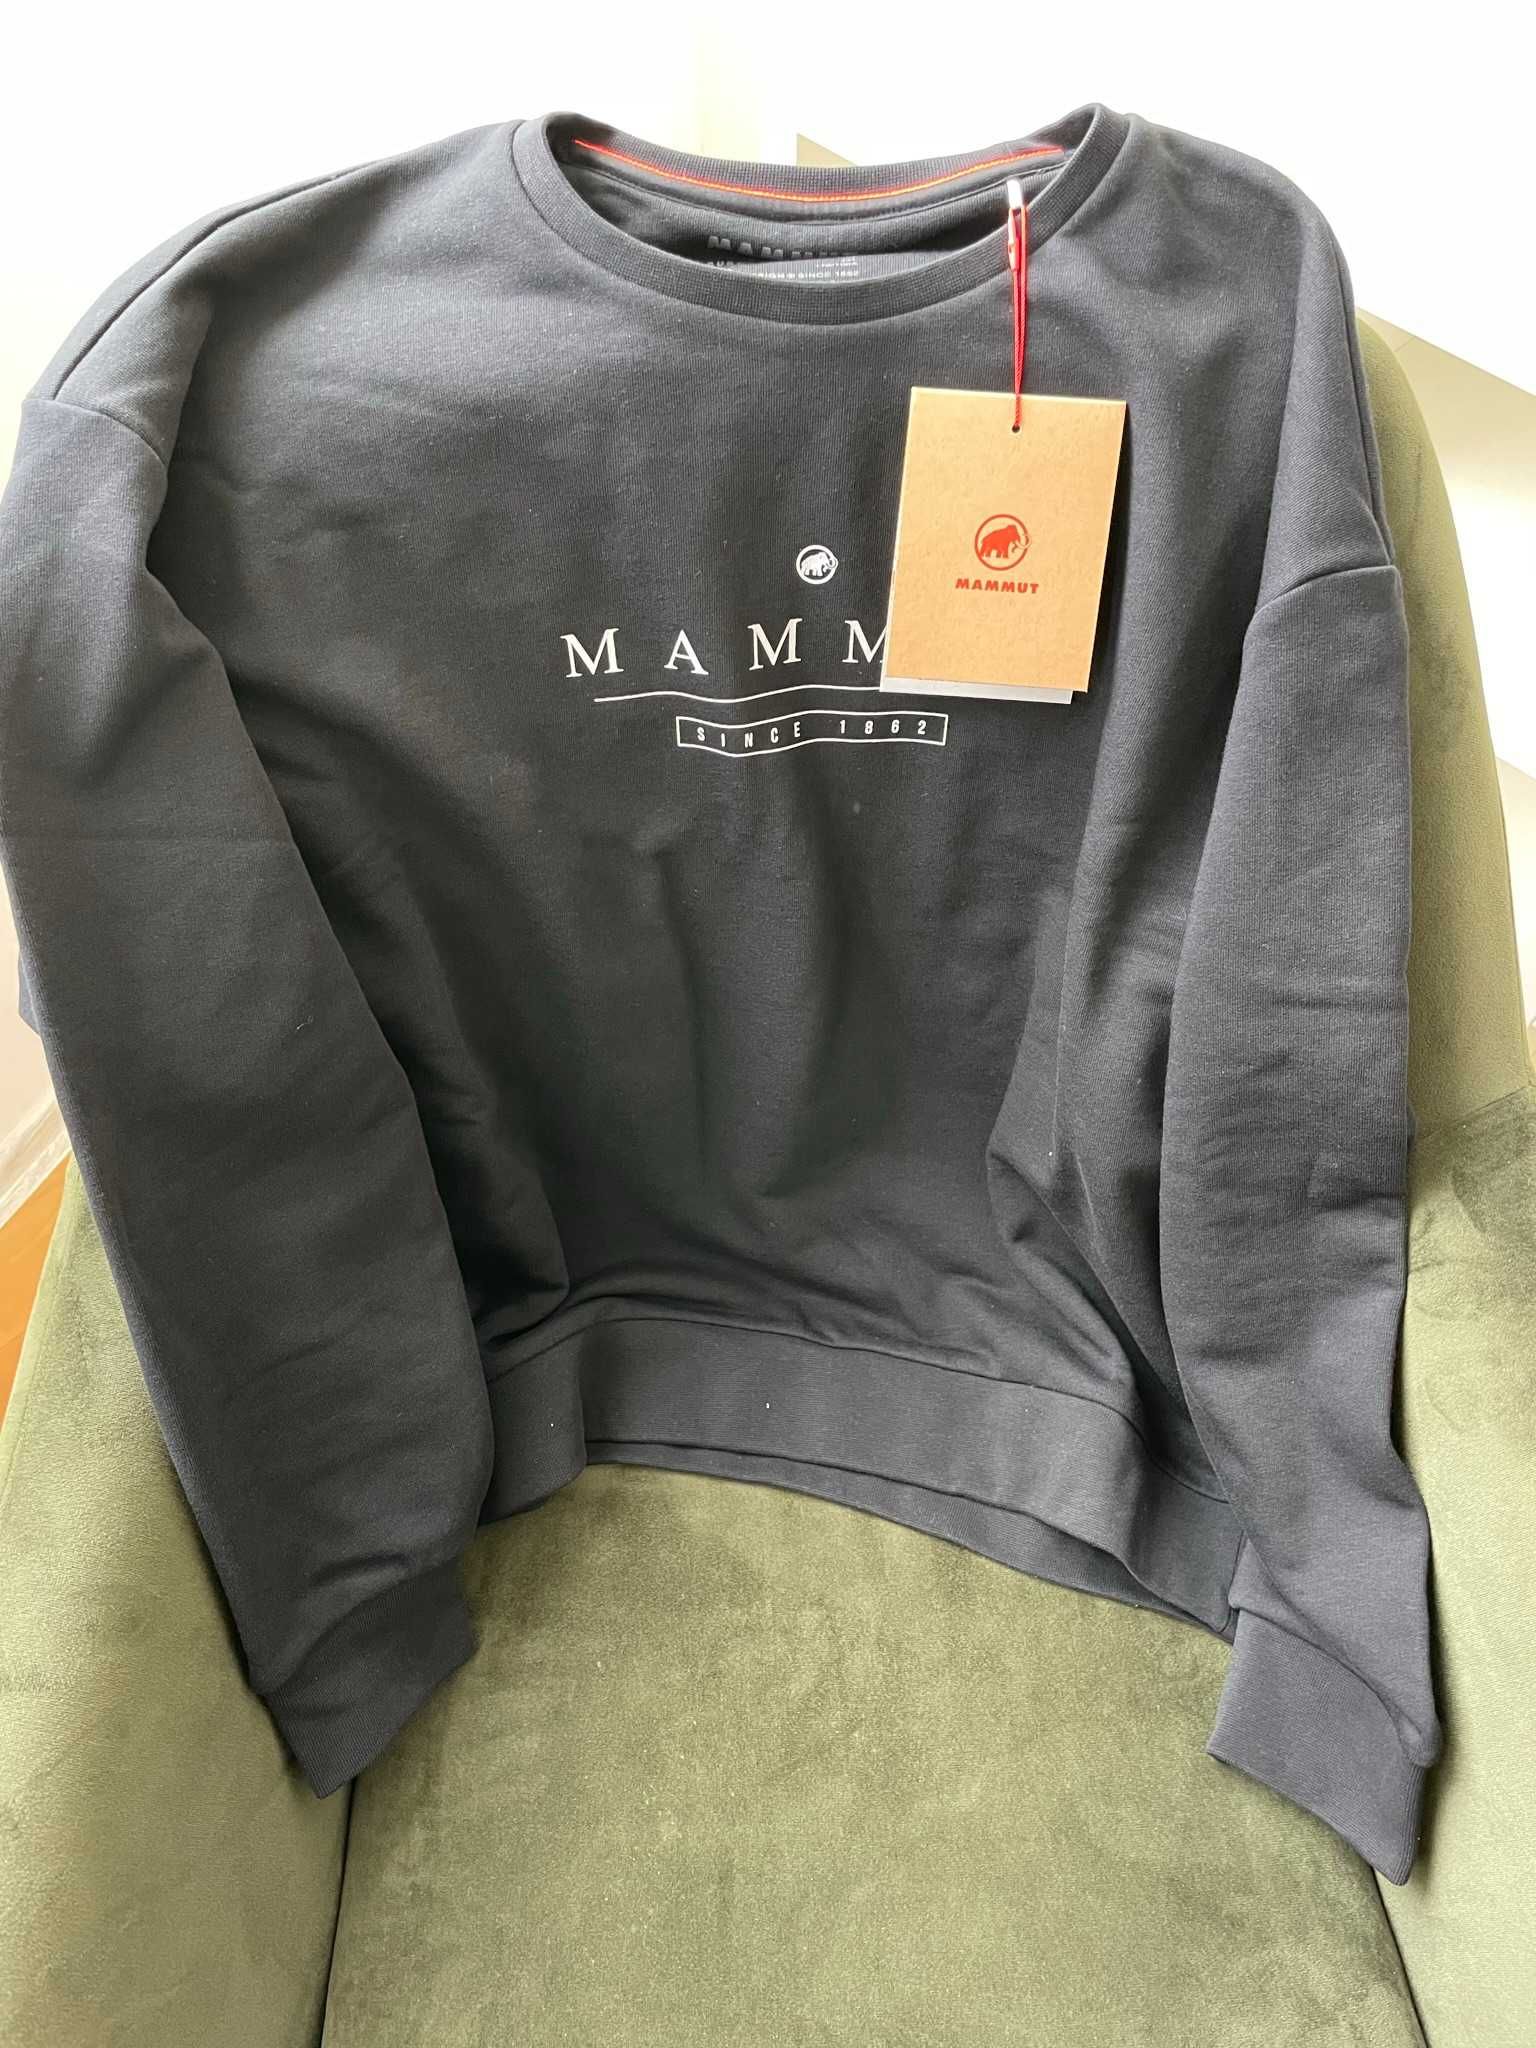 Дамска памучна блуза Mammut Core ML Crew, черна, размер М и XL